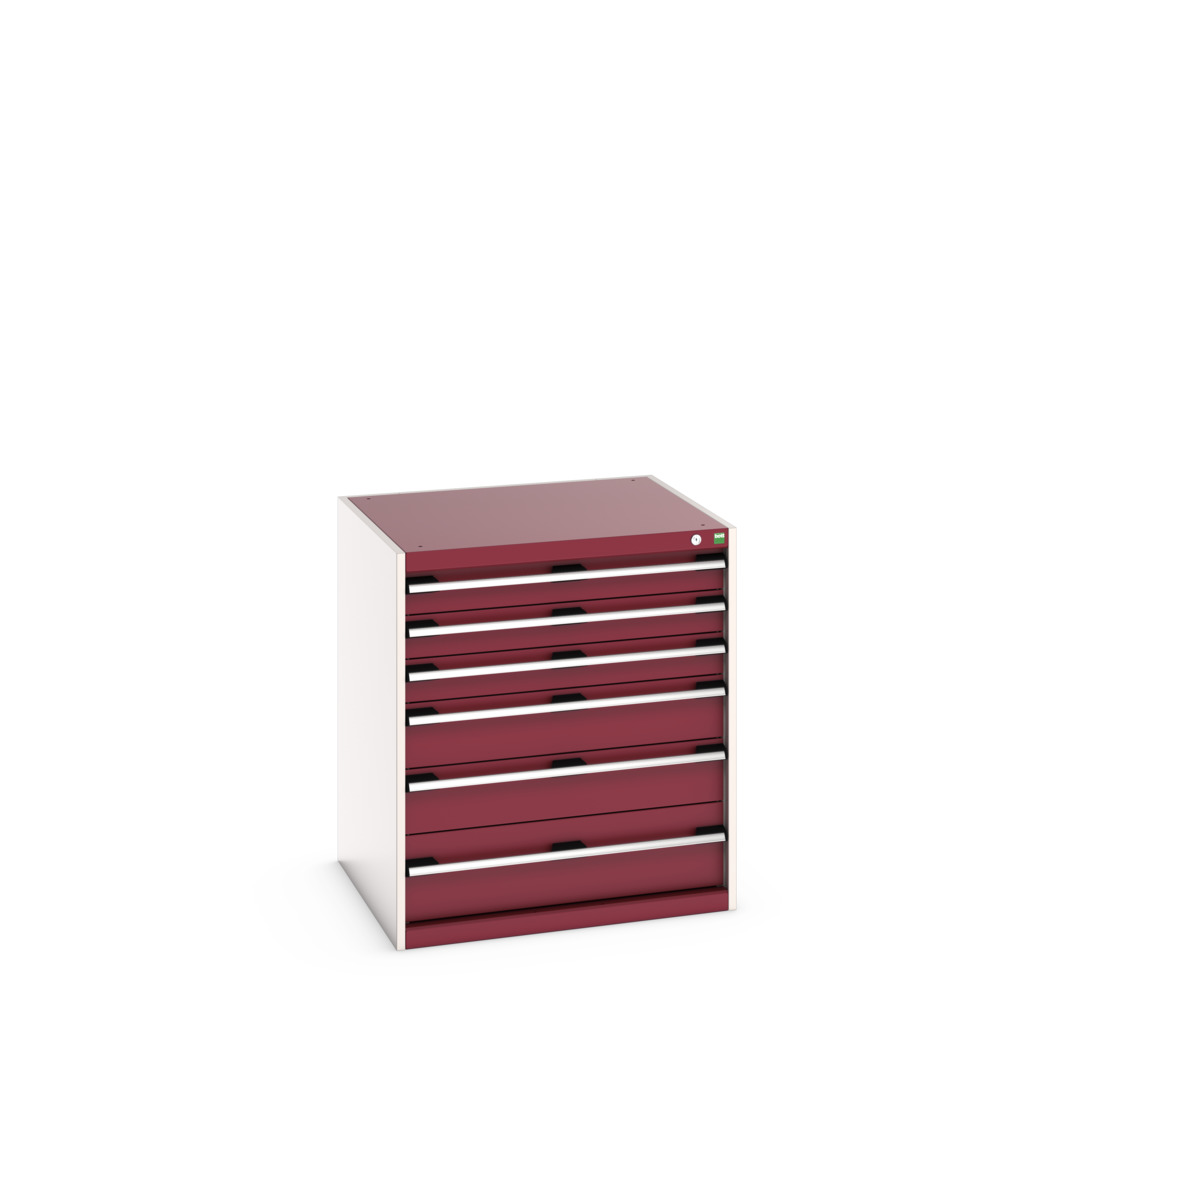 40028116.24V - cubio drawer cabinet